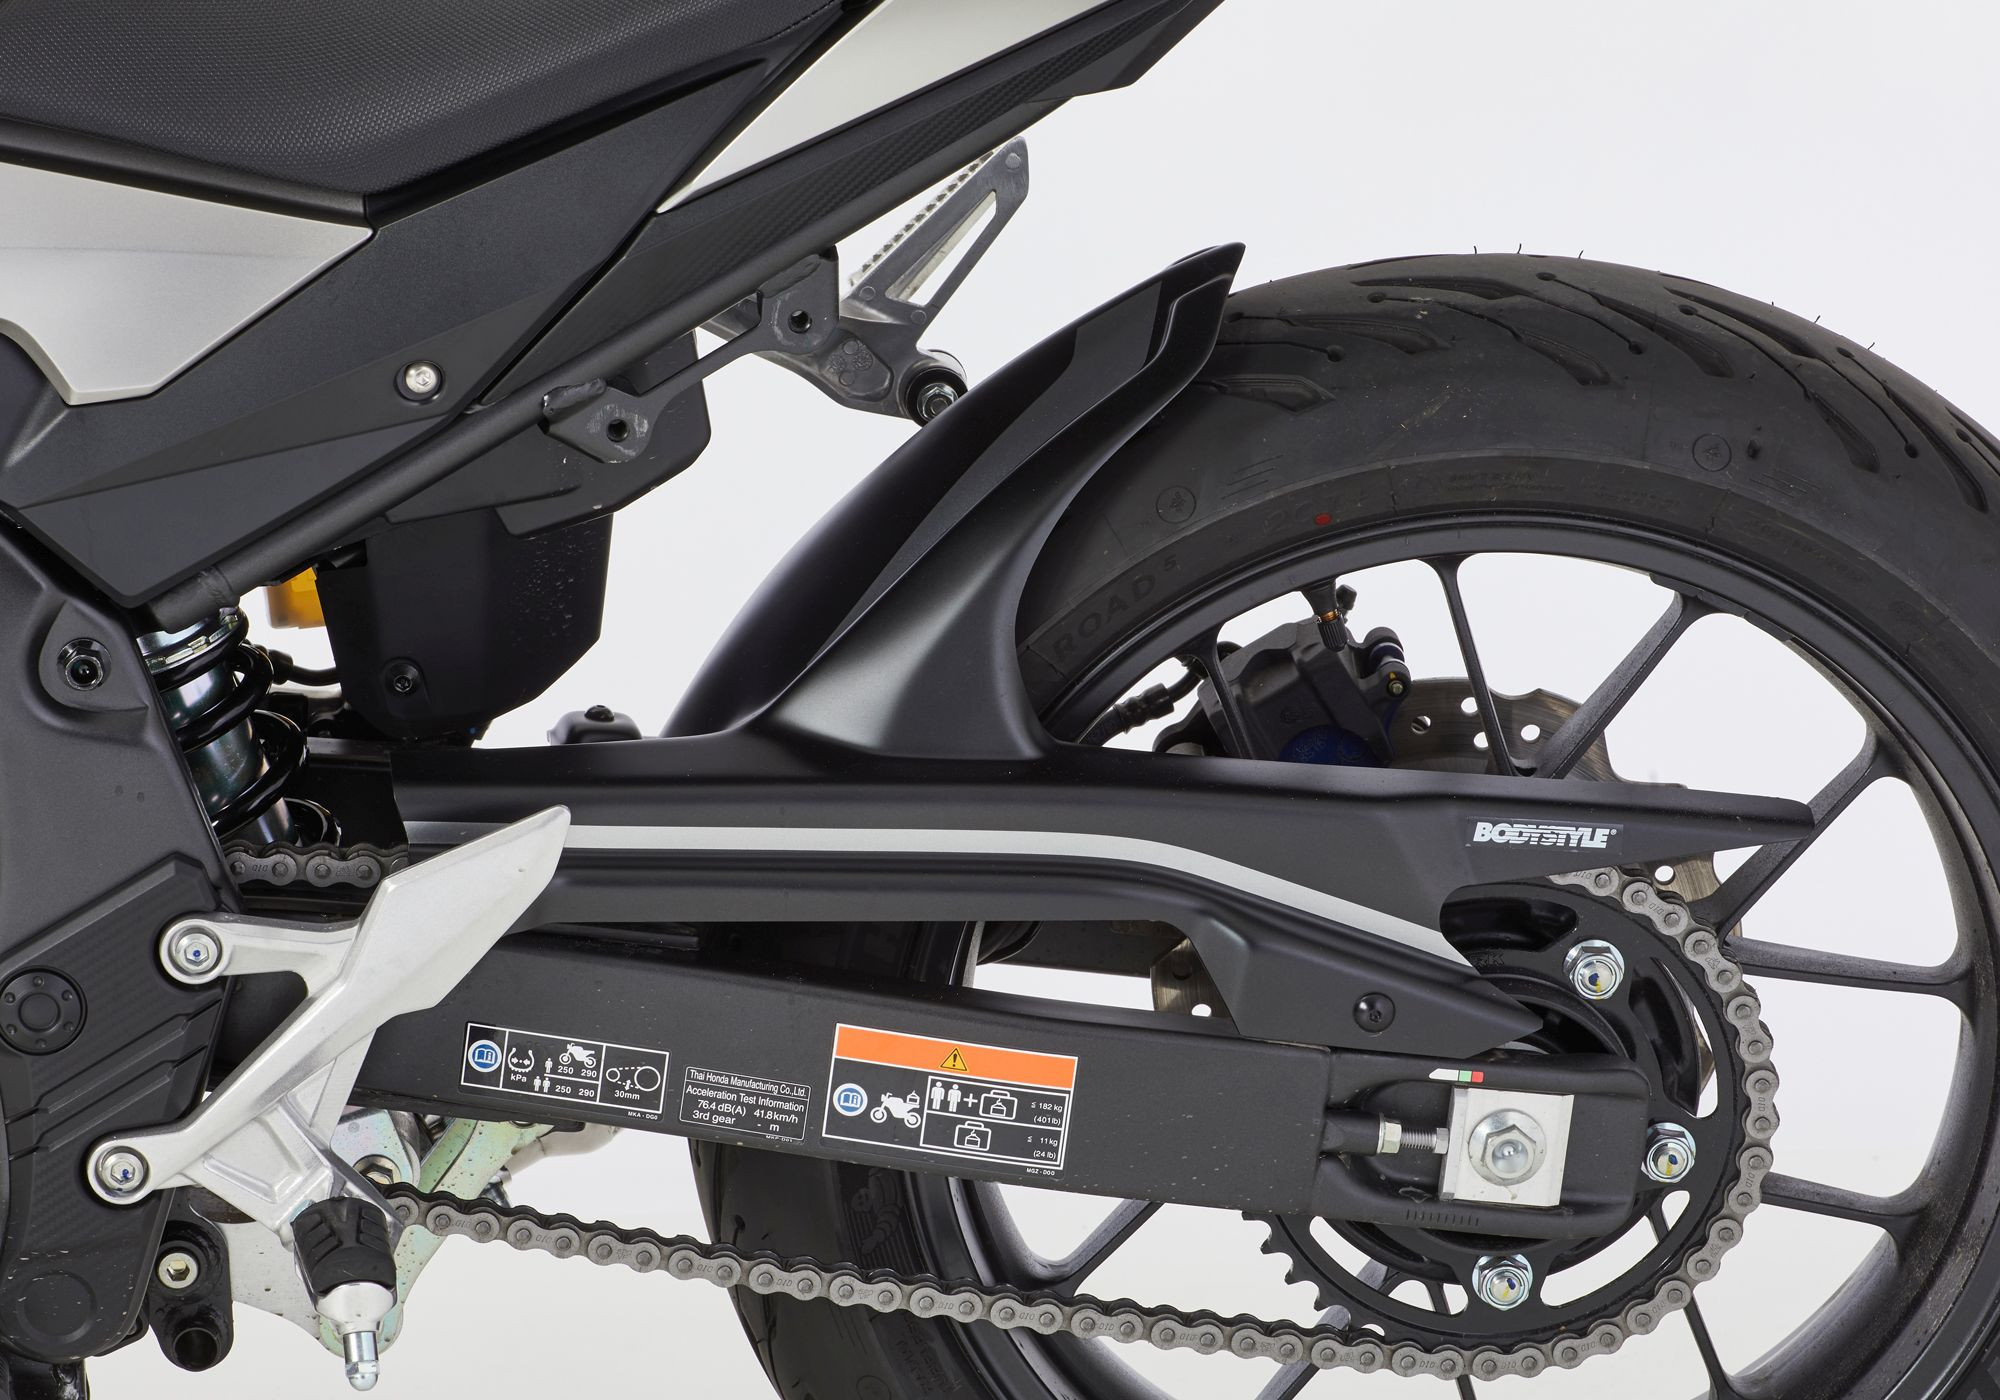 BODYSTYLE Sportsline Hinterradabdeckung grau Matt Axis Gray Metallic, NH303M ABE passt für Honda CBR500R 2019-2021